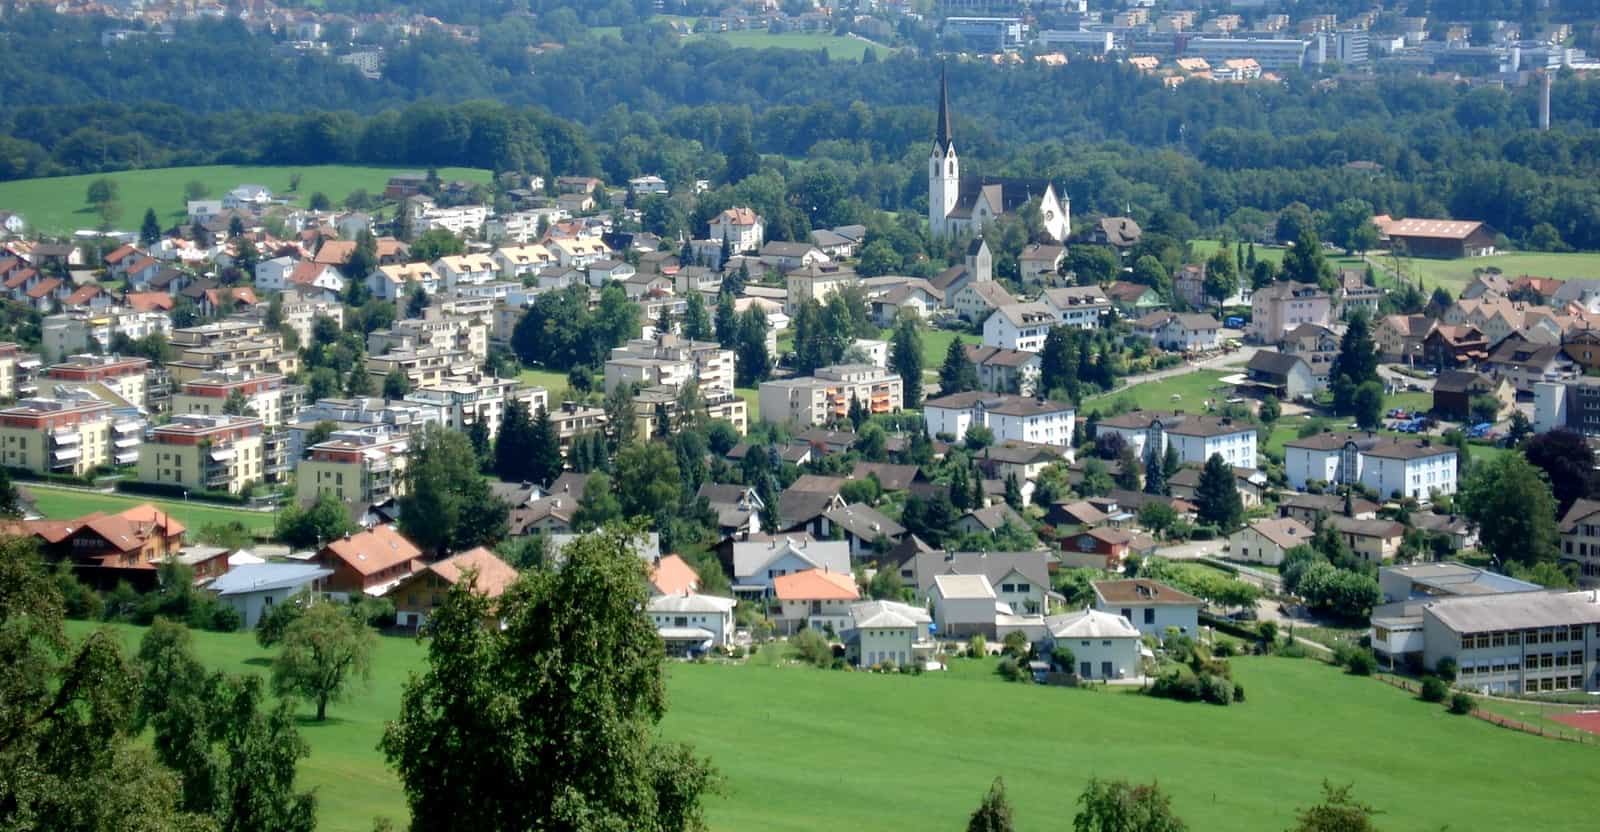 Blick auf das Dorf Abtwil